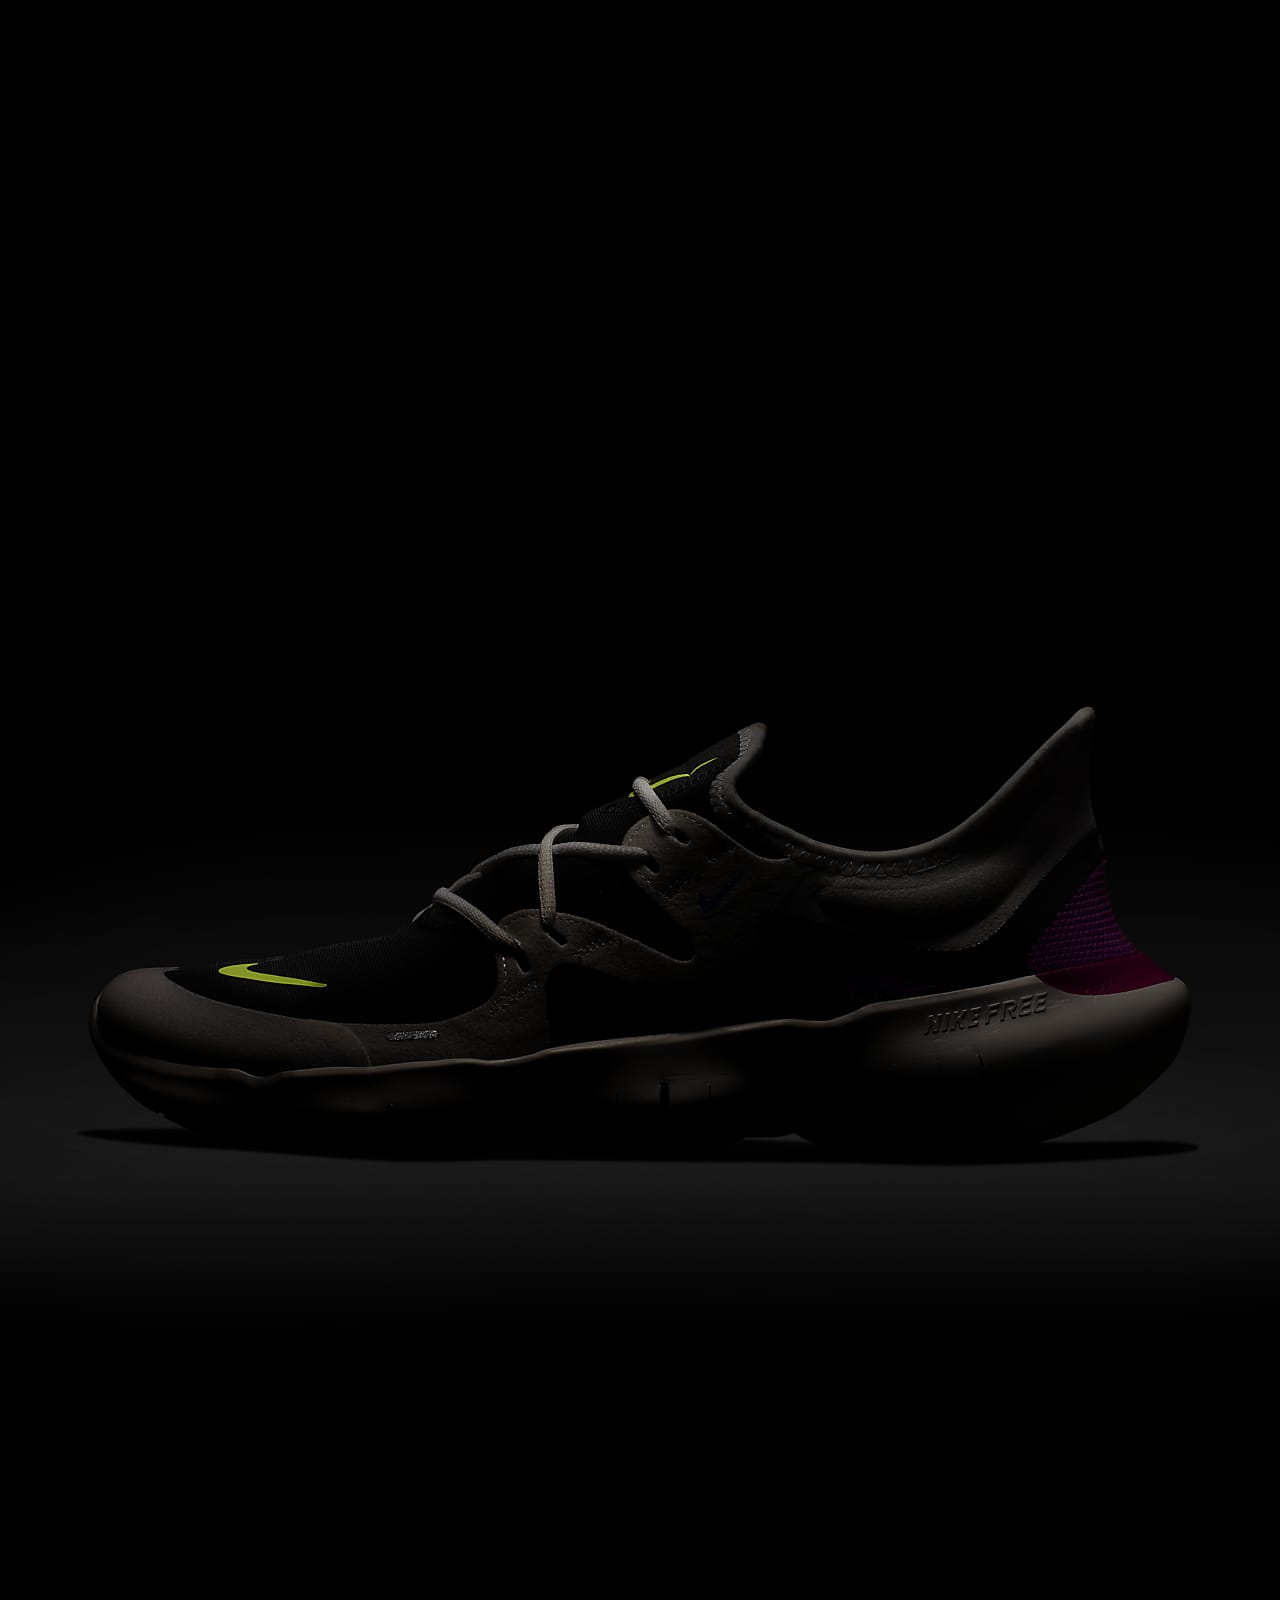 Nike Free RN 5.0 Men's Running Shoes 